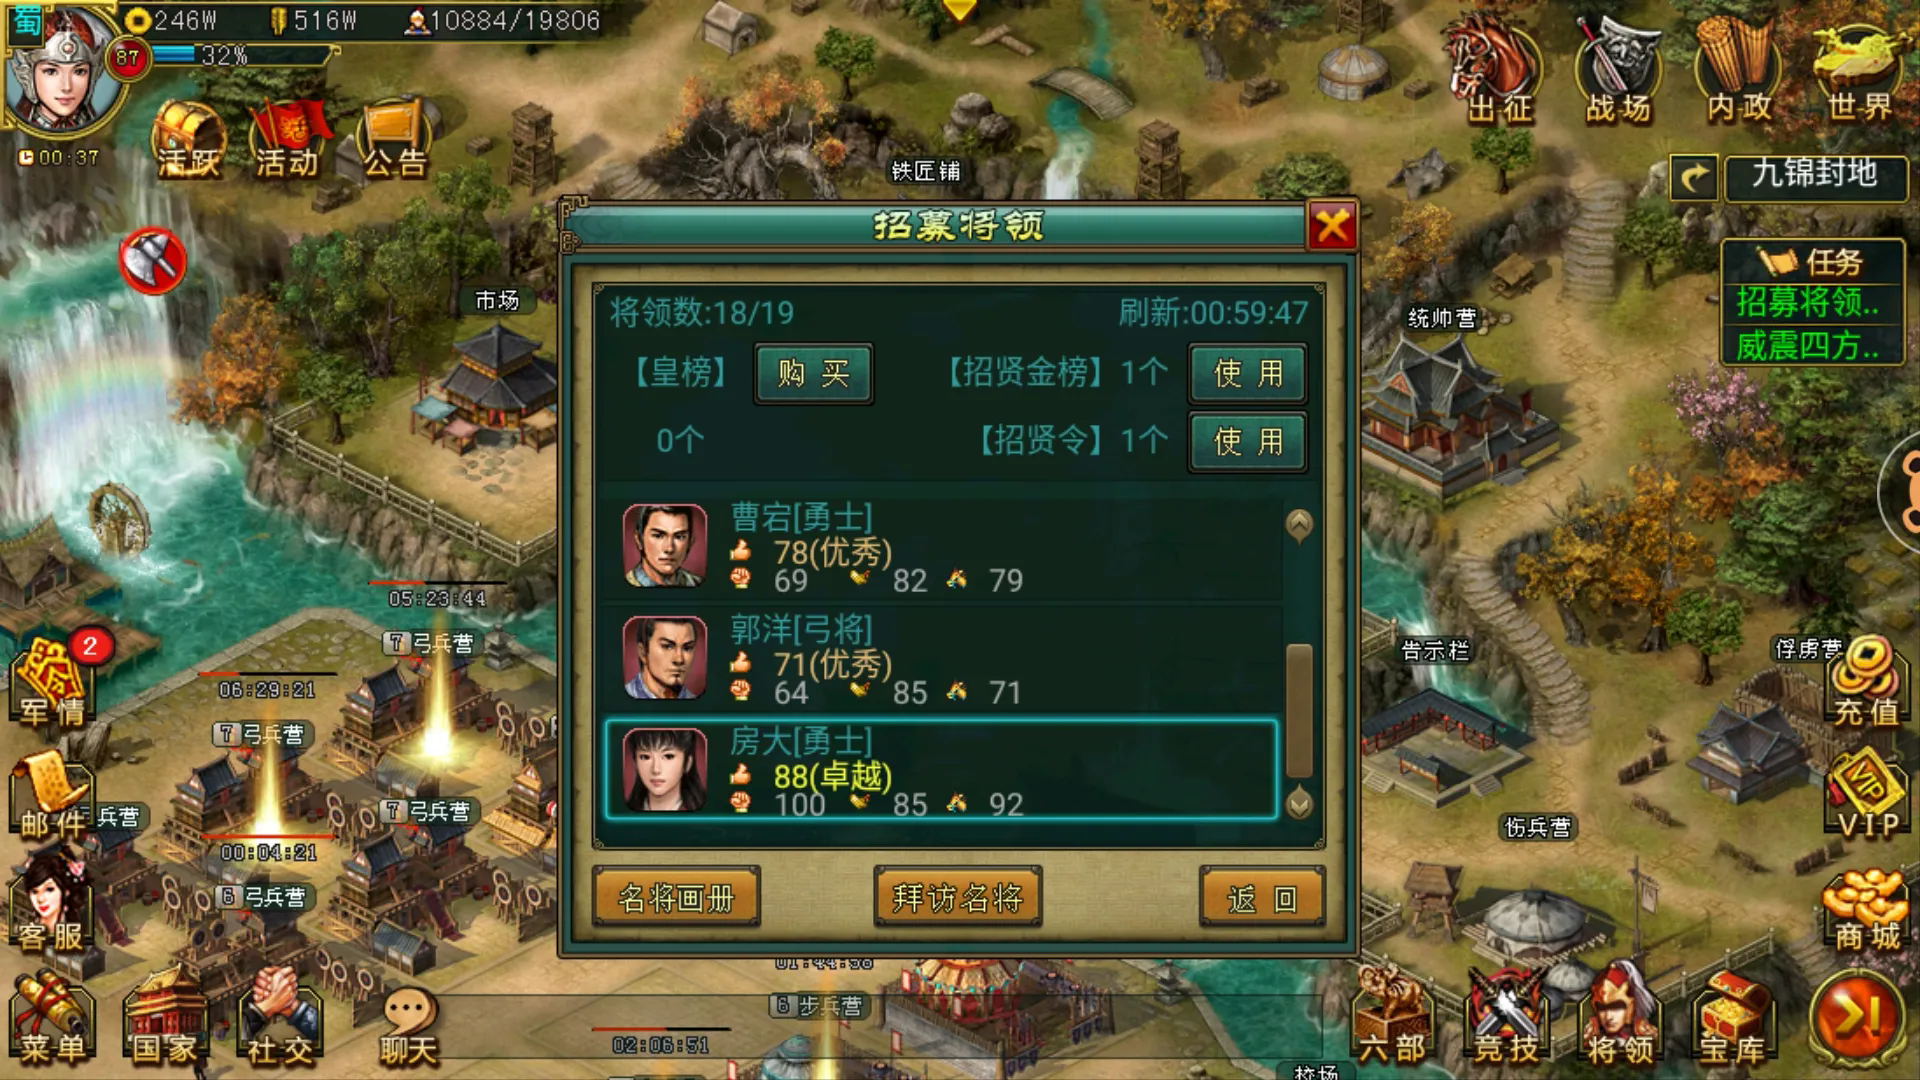 刘备在帝王三国中所具备的特点有哪些